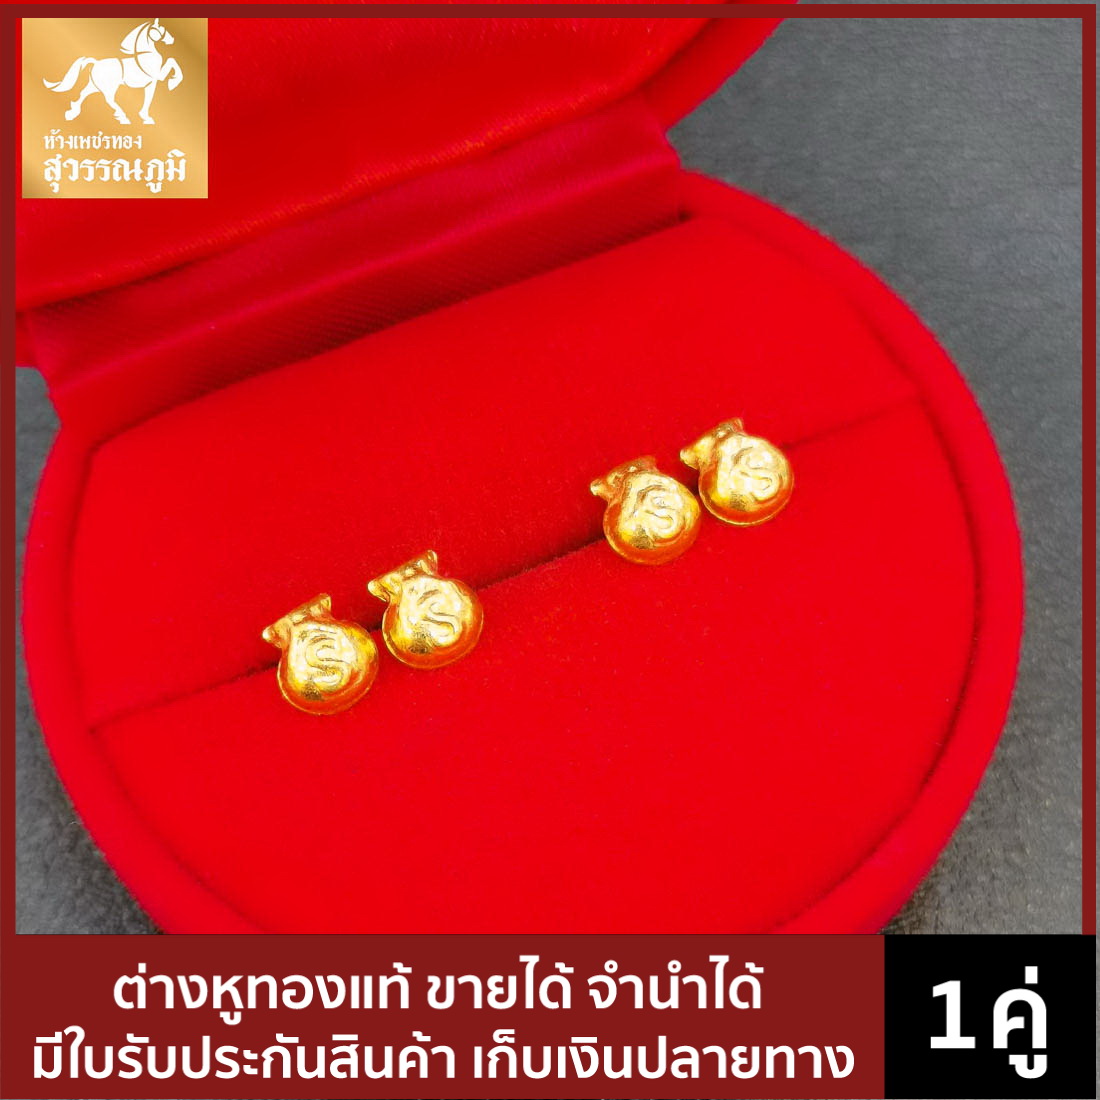 ต่างหูทองคำแท้ ลายถุงทองวิบวับ น้ำหนักทอง 0.6 กรัม ทองคำแท้ 96.5% (เยาวราช) มีใบรับประกันสินค้า ขายได้ จำนำได้ จัดส่งฟรี!!!